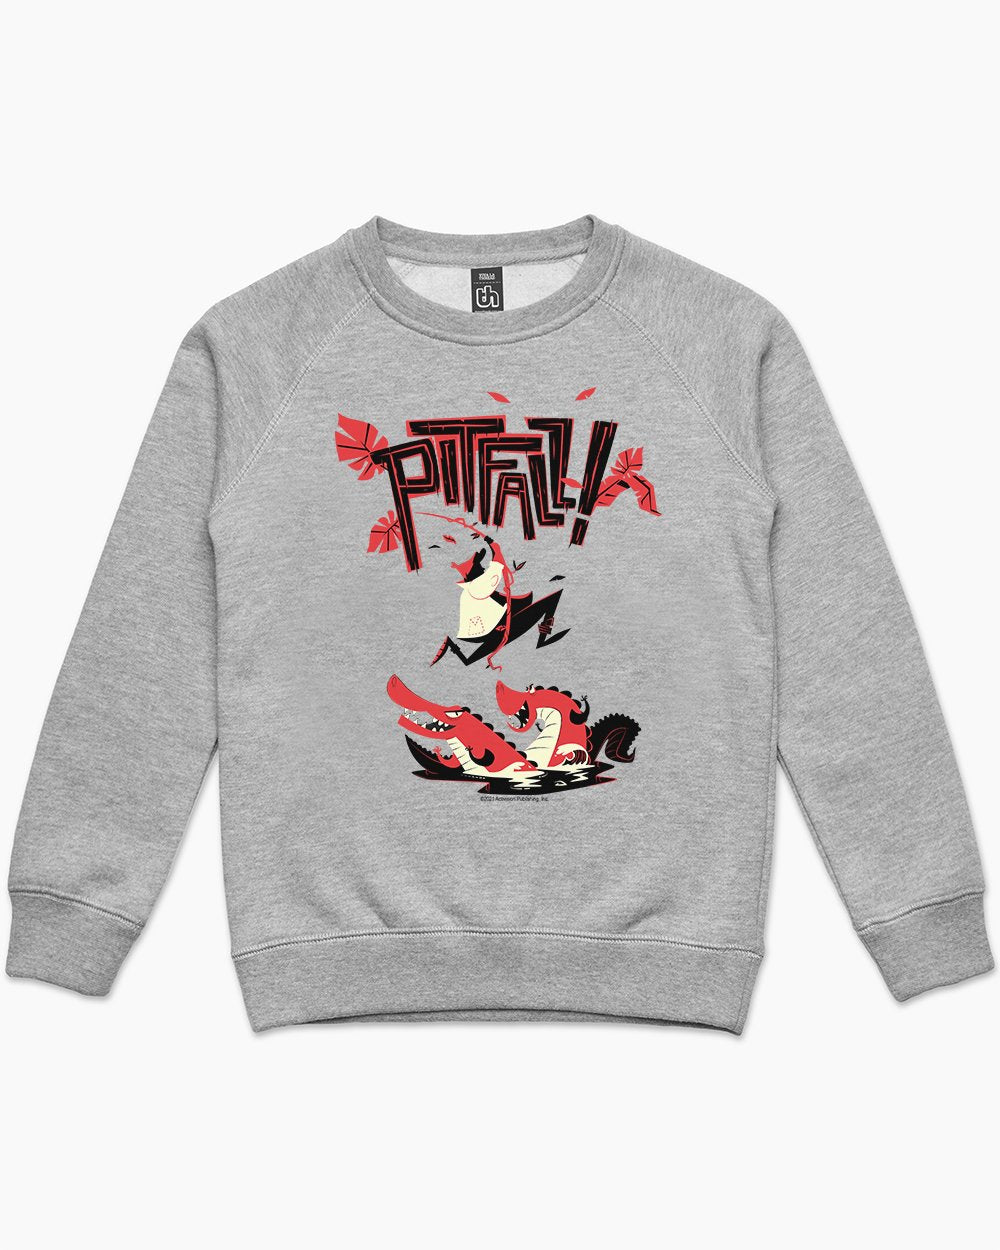 Pitfall Tiki Kids Sweater Australia Online #colour_grey